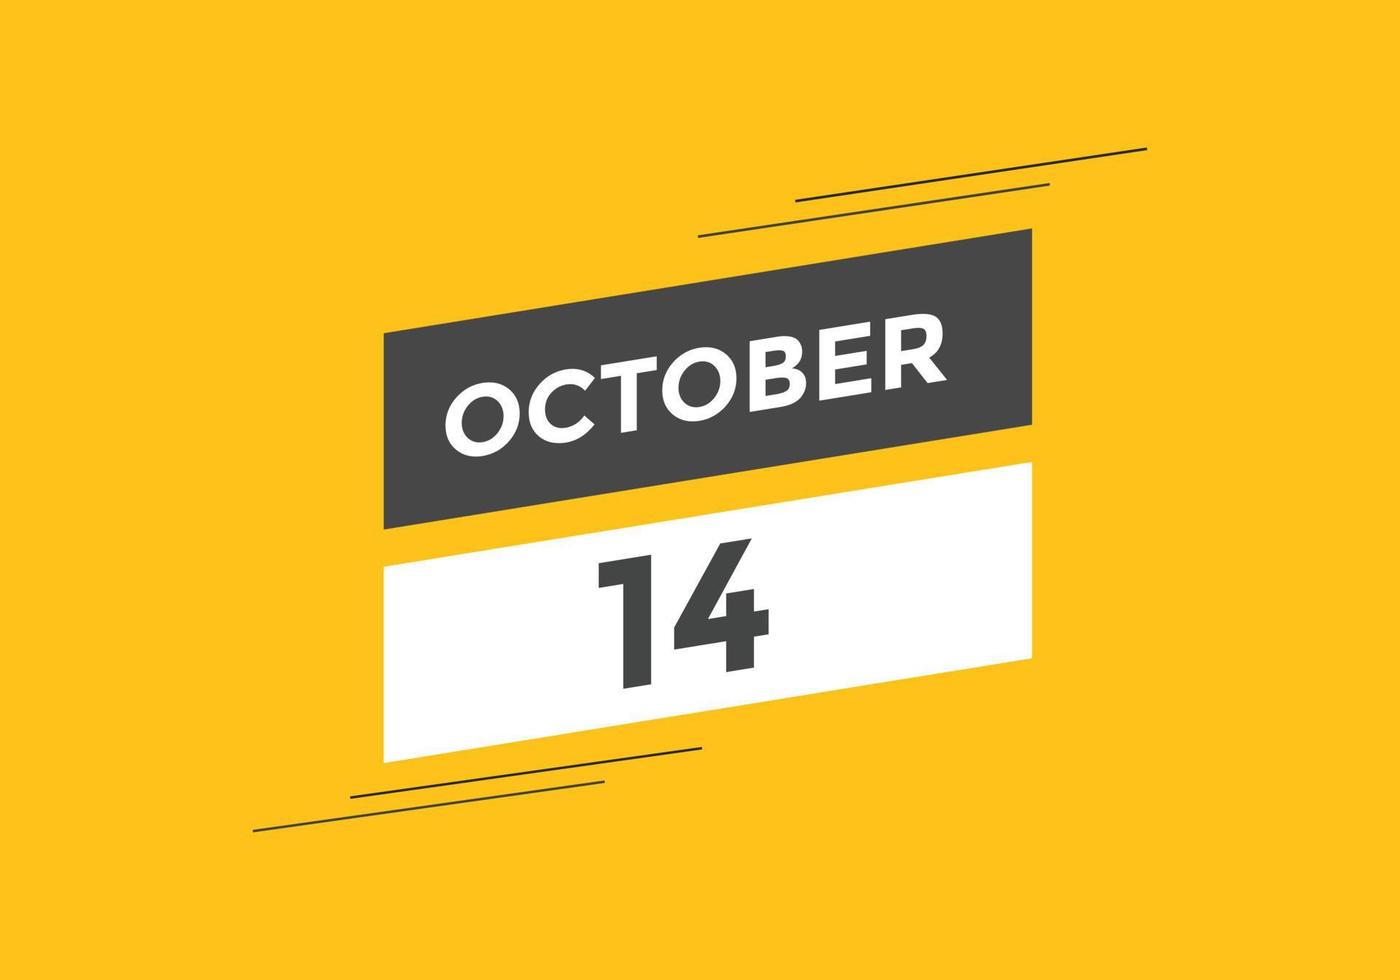 rappel du calendrier du 14 octobre. Modèle d'icône de calendrier quotidien du 14 octobre. modèle de conception d'icône calendrier 14 octobre. illustration vectorielle vecteur